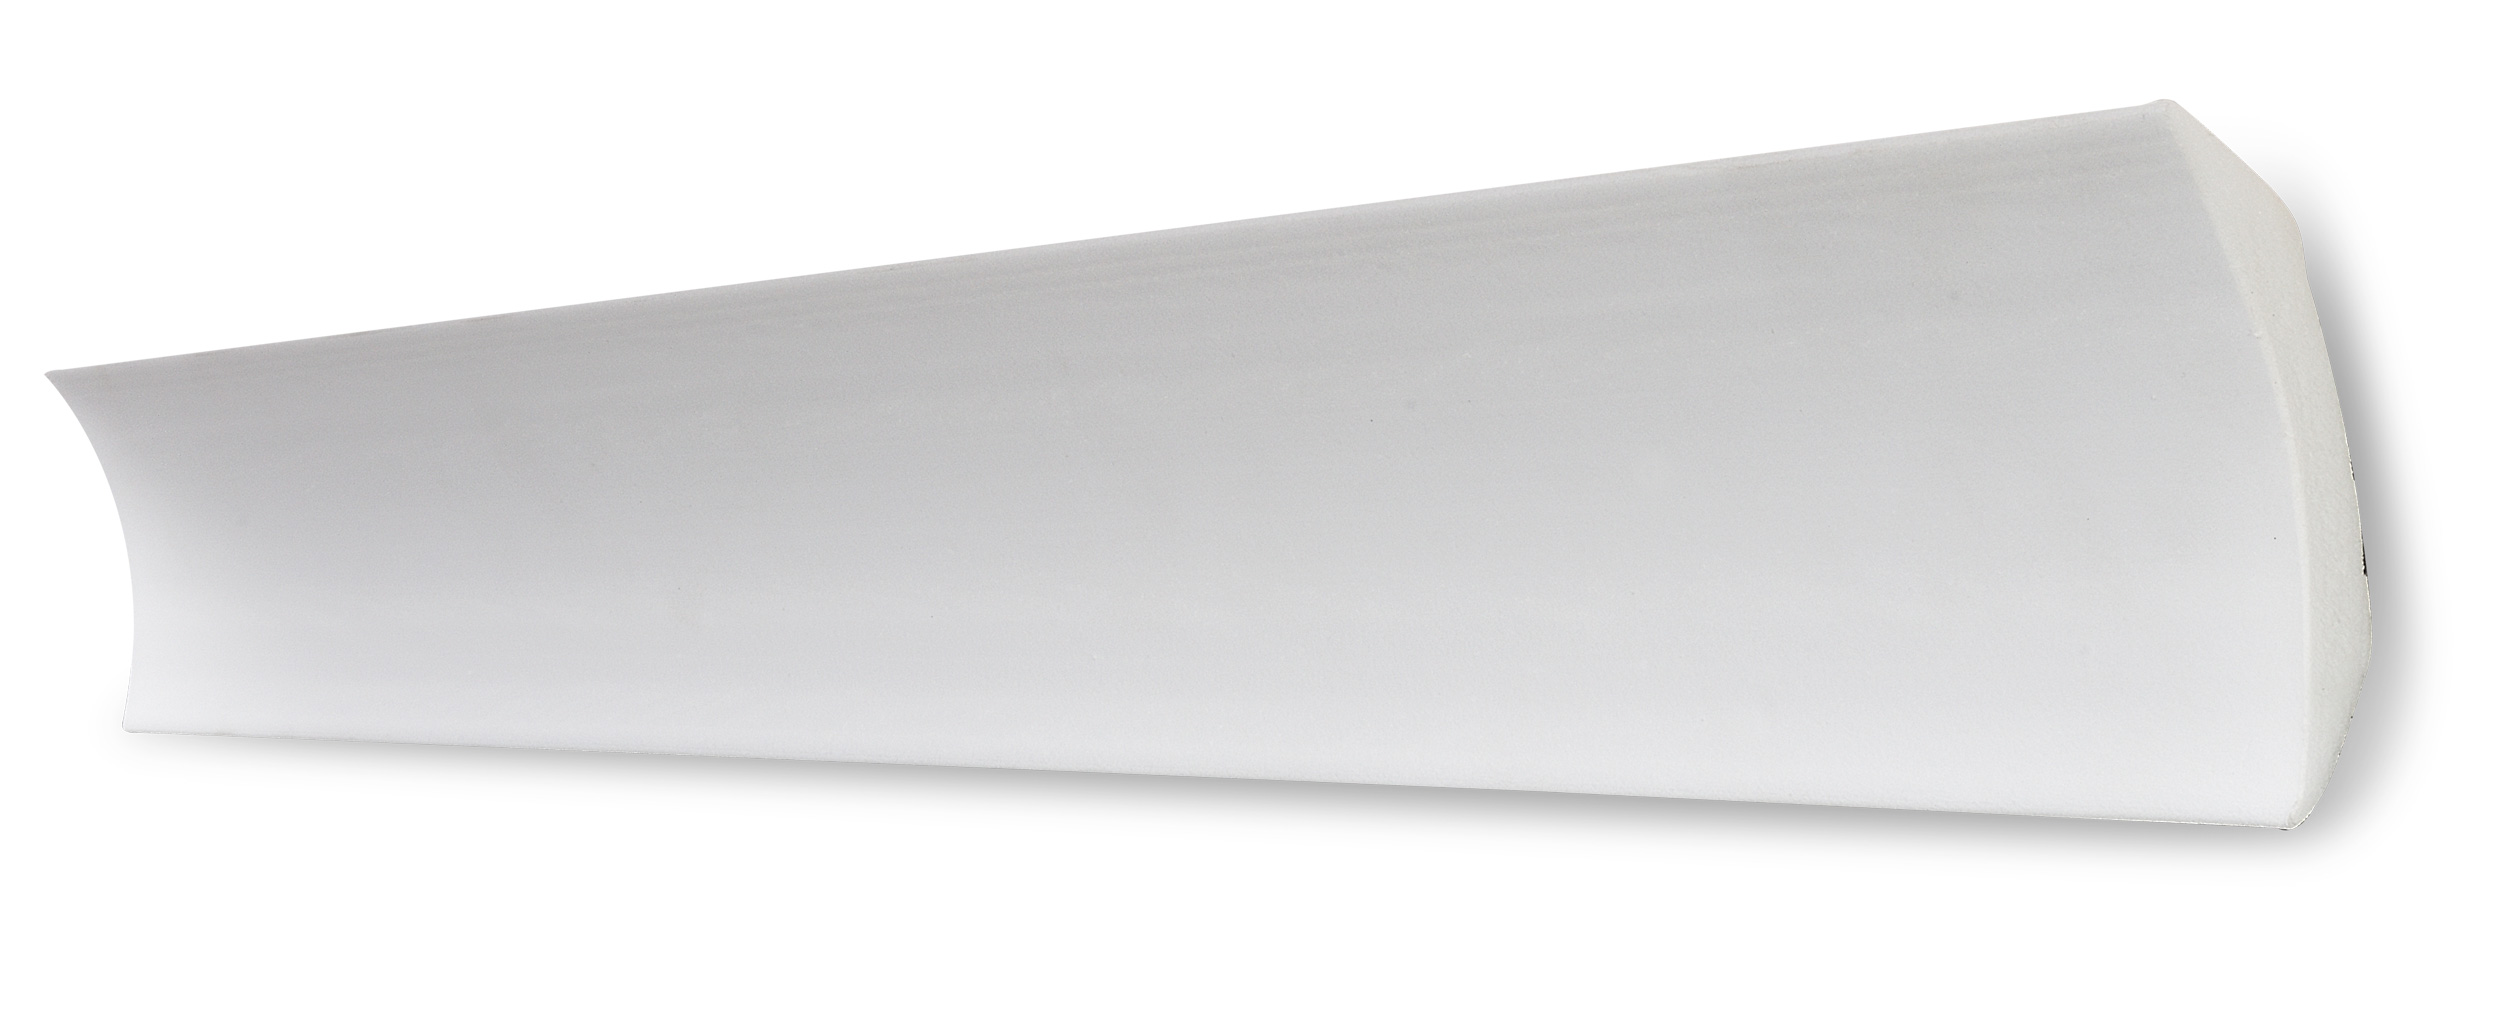 Decosa Zierprofil B9, weiß, 55 x 55 mm, Länge: 2 m